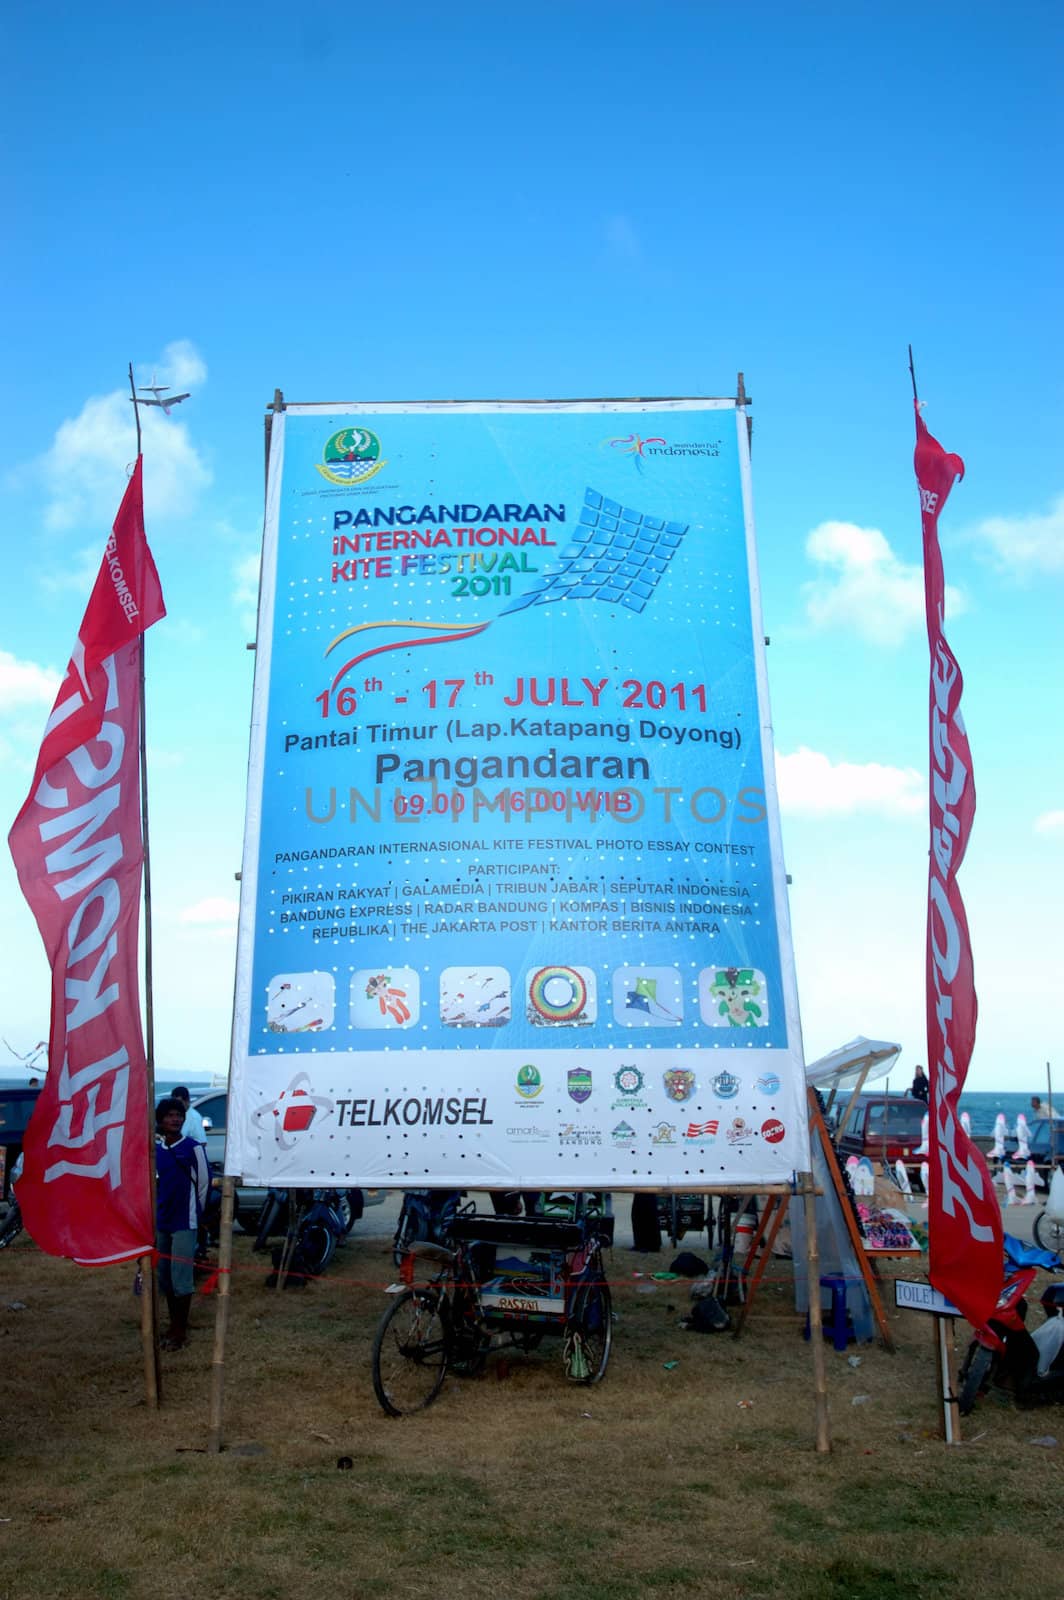 pangandaran, indonesia-july 16, 2011: pangandaran international kite festival billboard that held in east coast pangandaran beach, west java-indonesia.